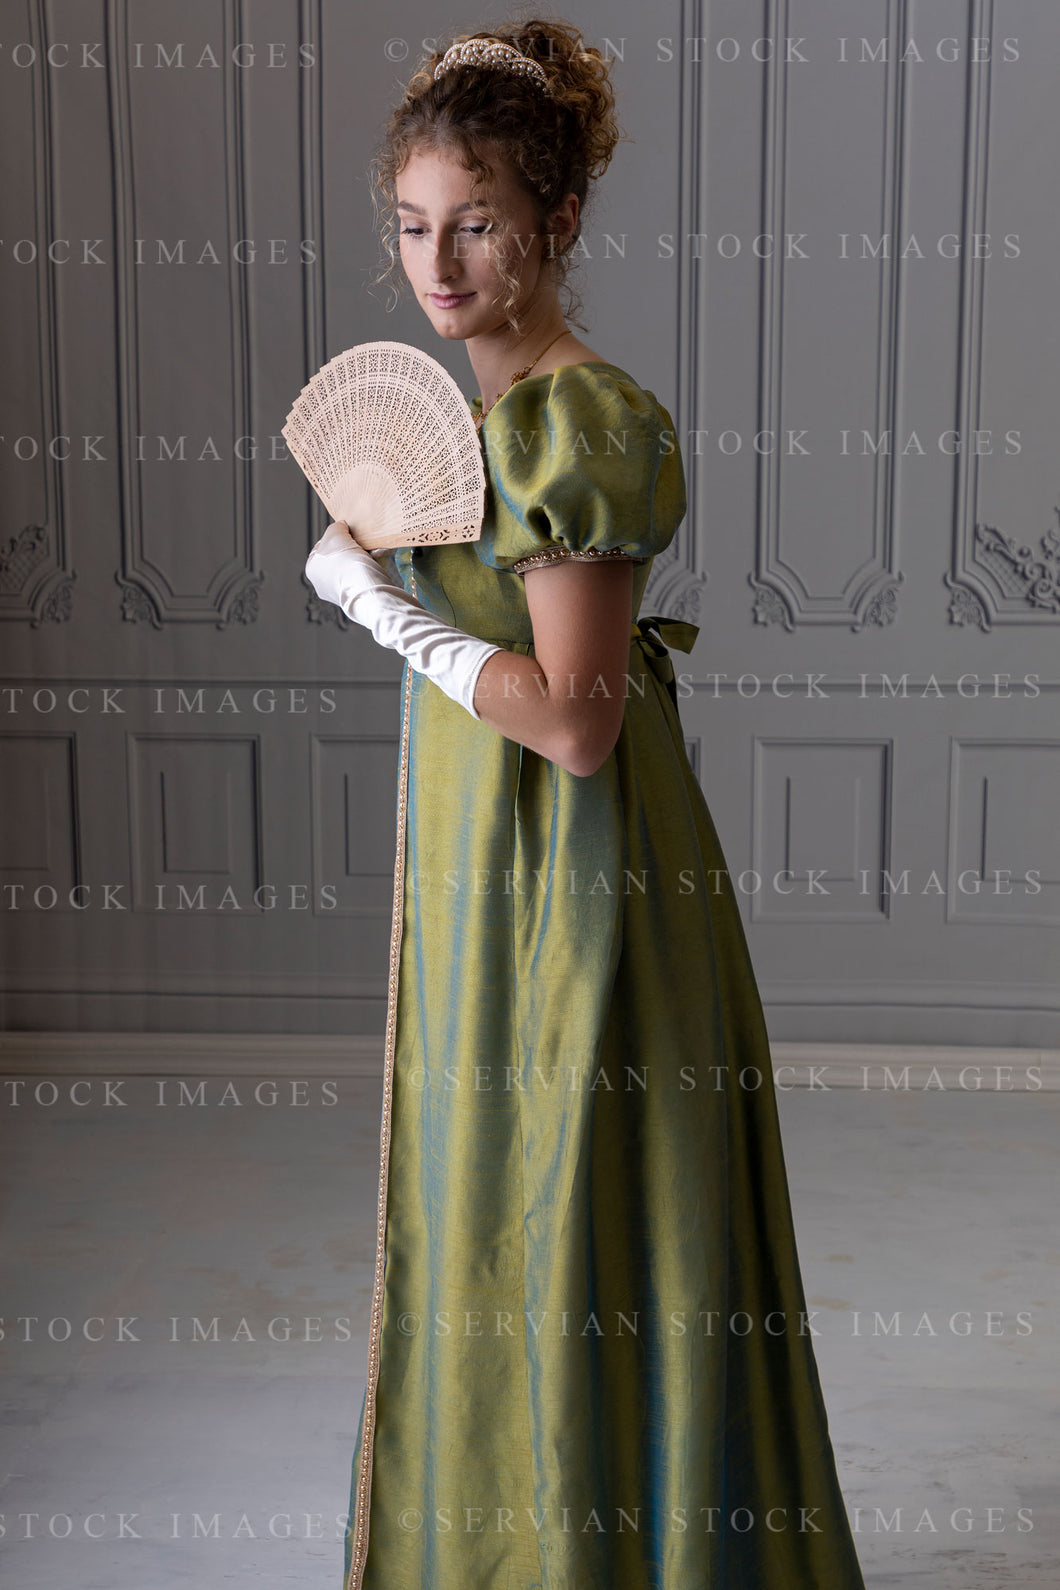 Regency woman in a shot silk gown (Sav 8551)